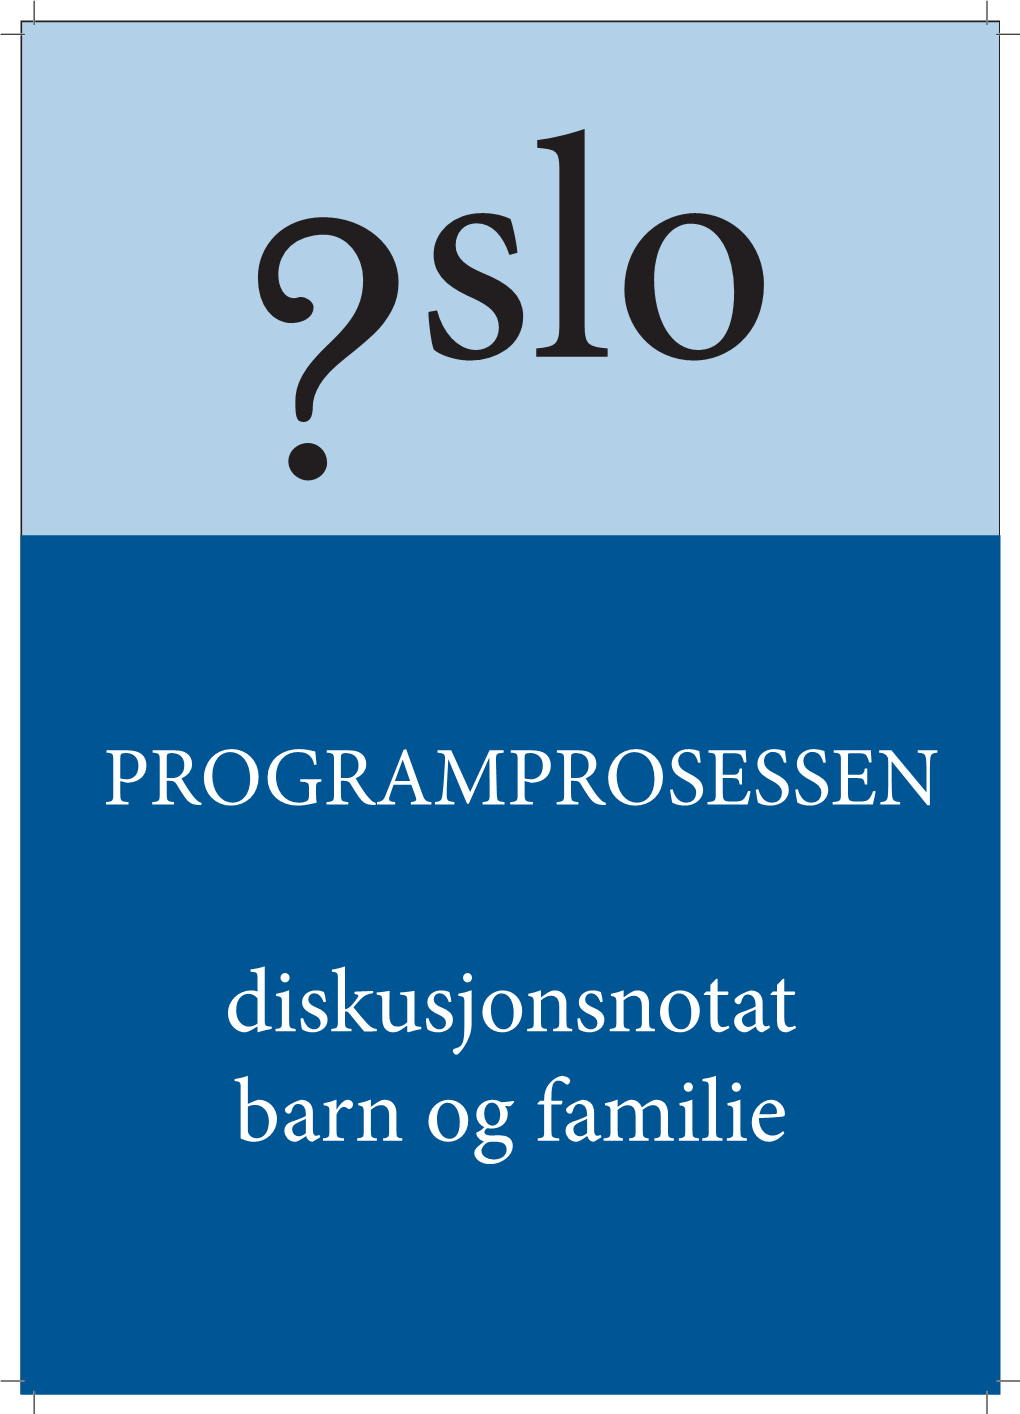 Diskusjonsnotat Barn Og Familie Kjære Medlem Av Oslo Høyre, Dette Er Et Debattnotat Om Barne- Og Familiepolitikk